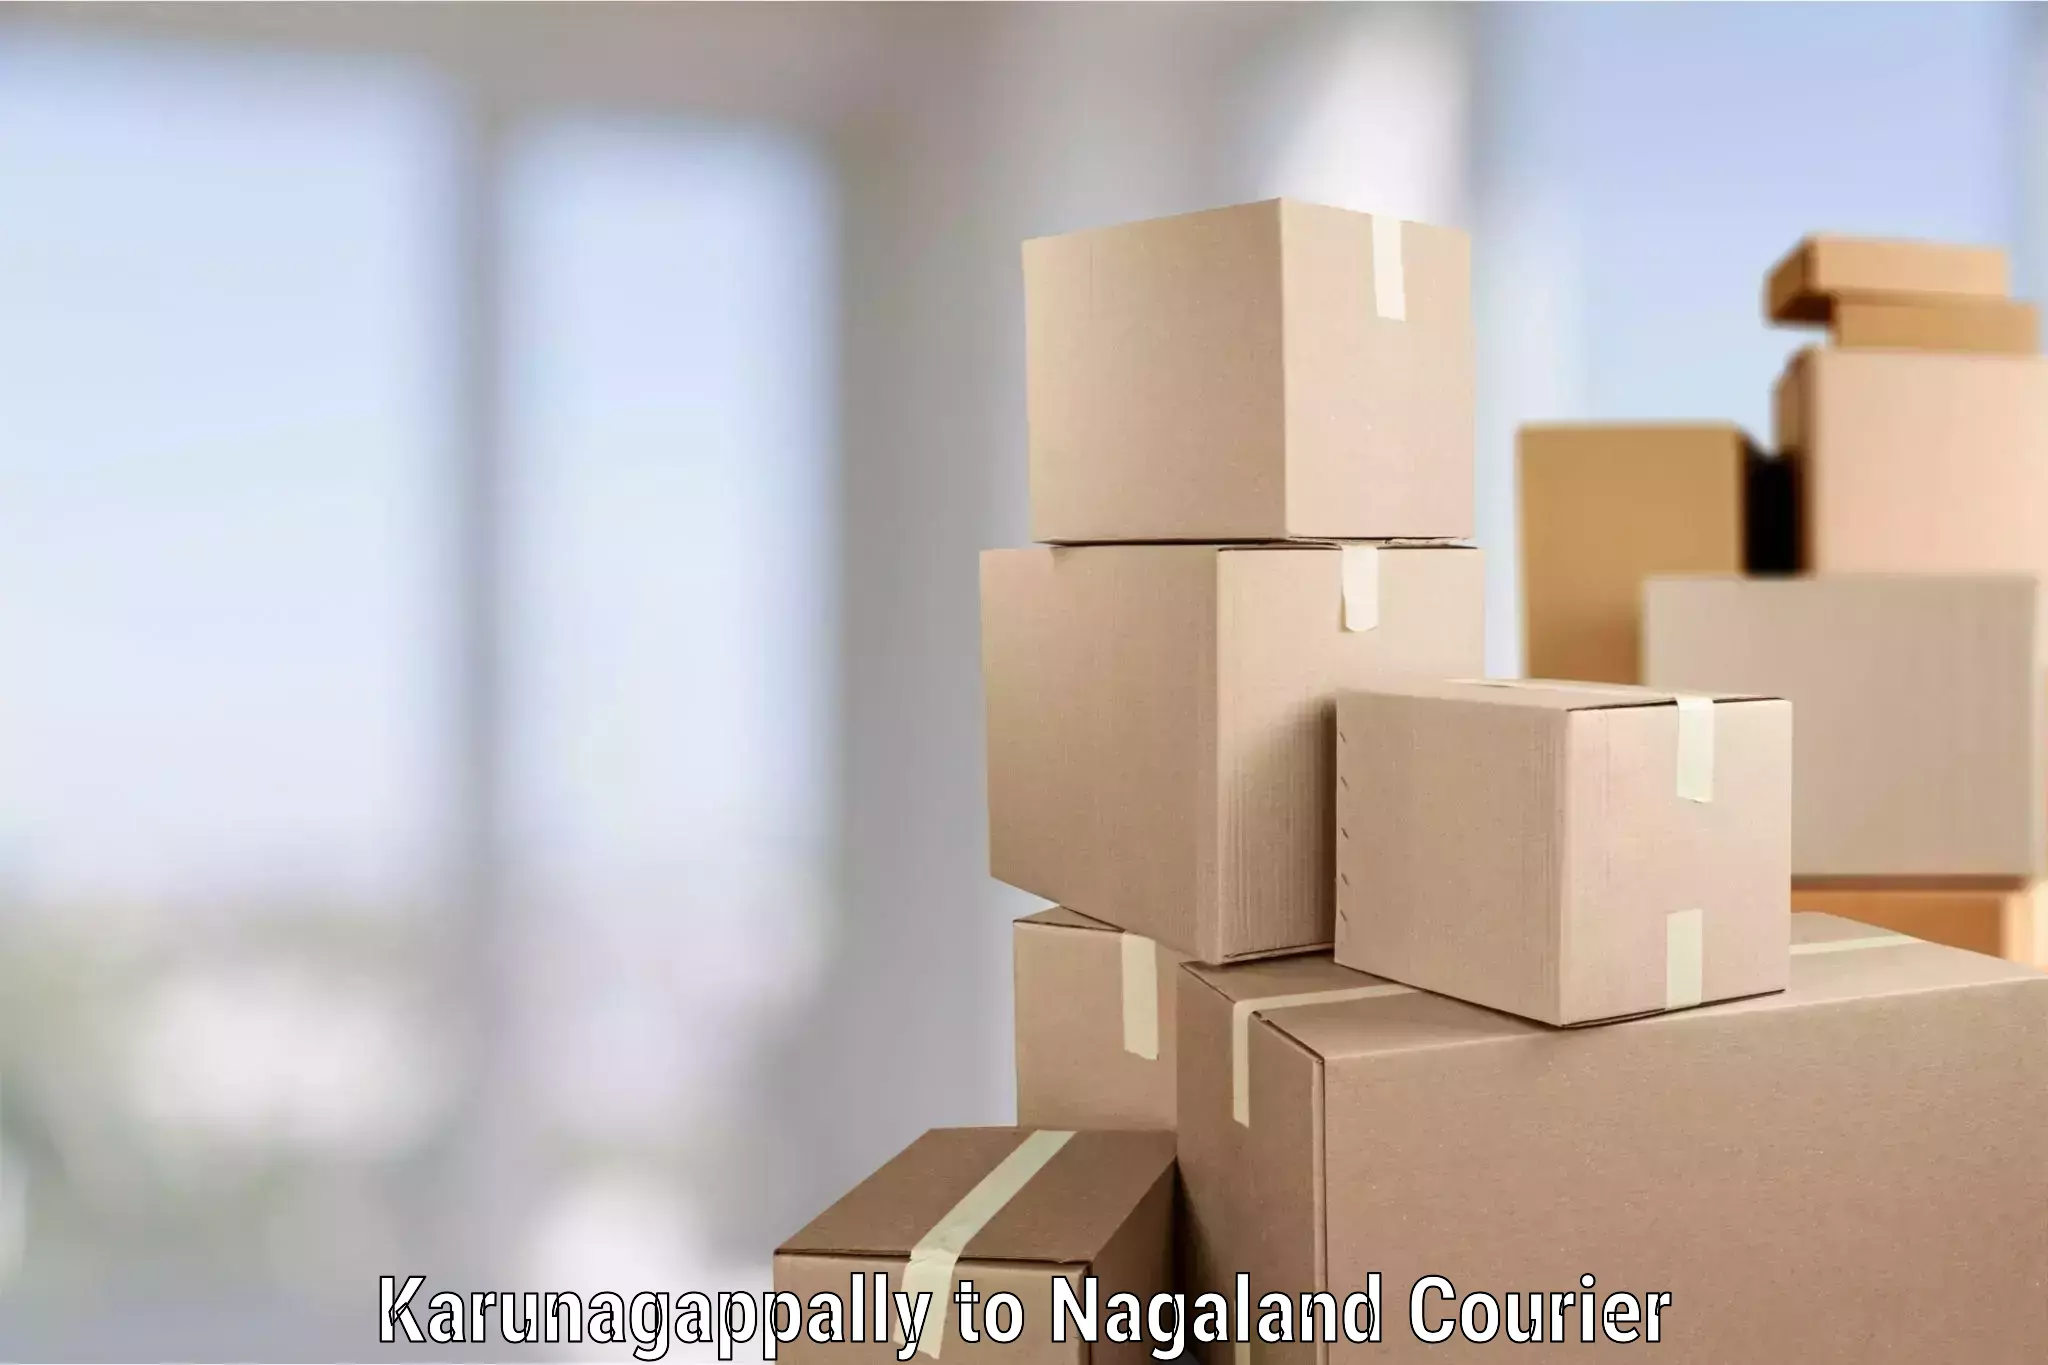 Trusted furniture movers Karunagappally to Nagaland